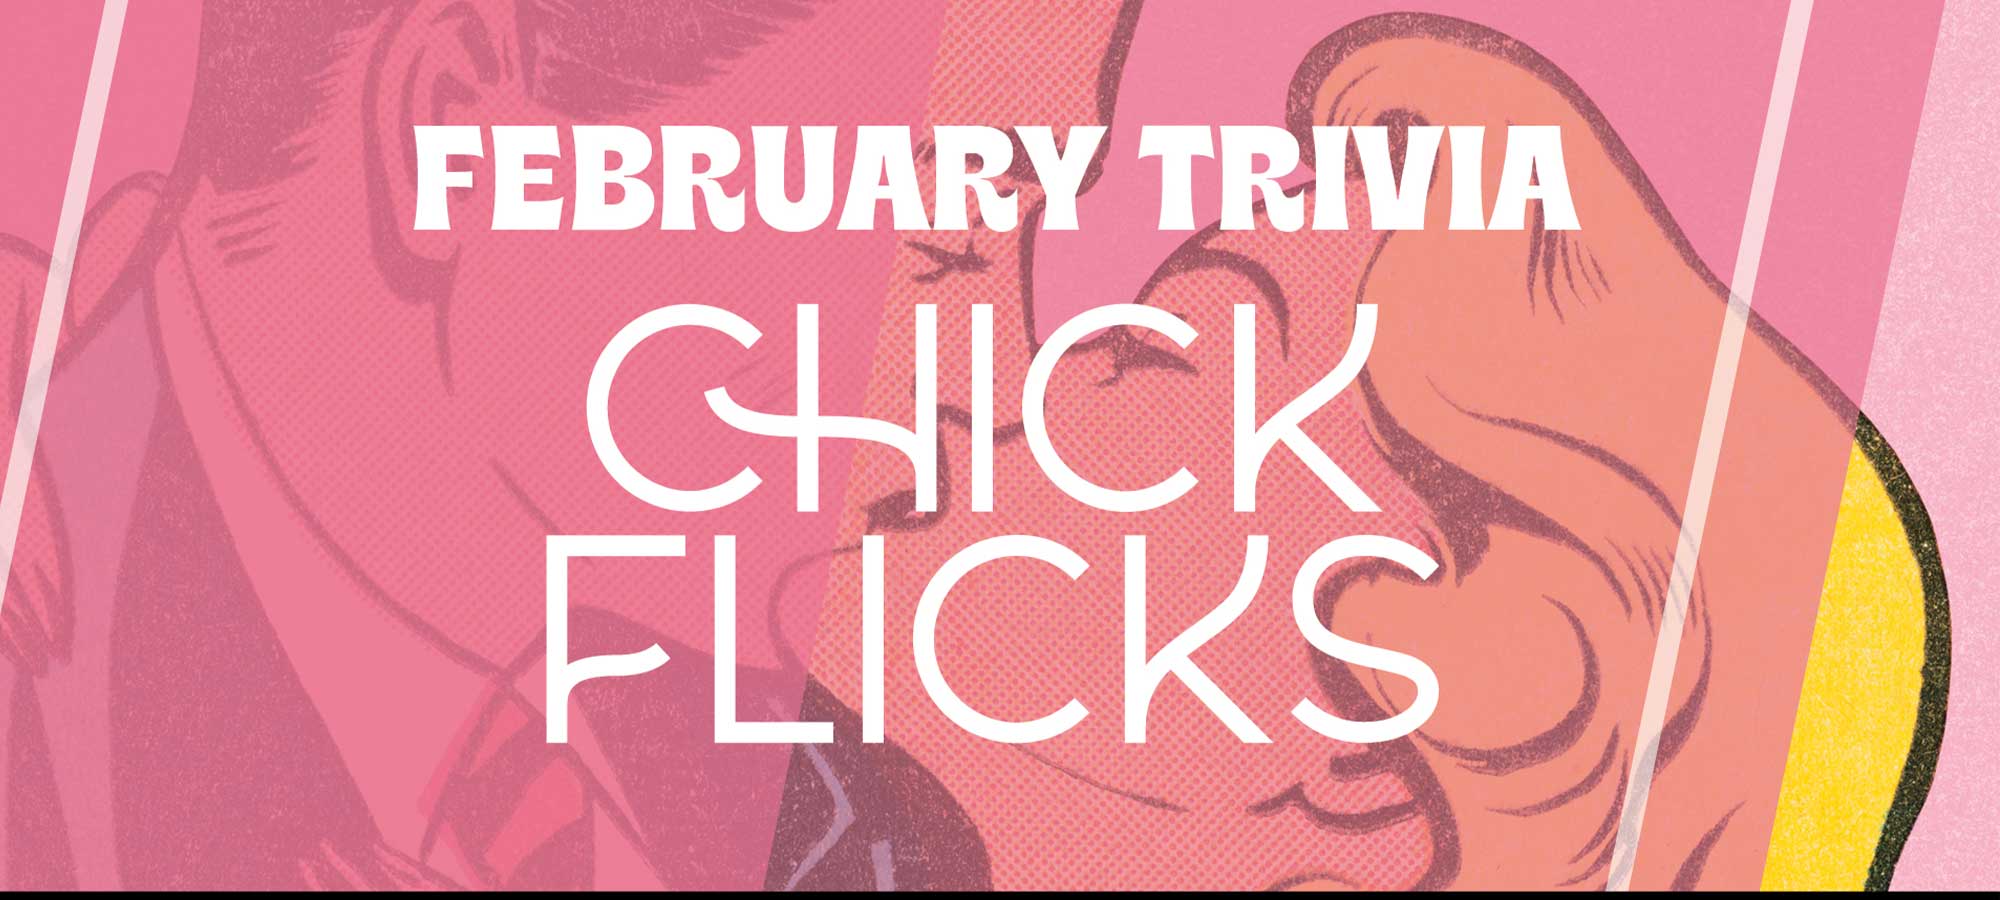 Chick Flicks Trivia